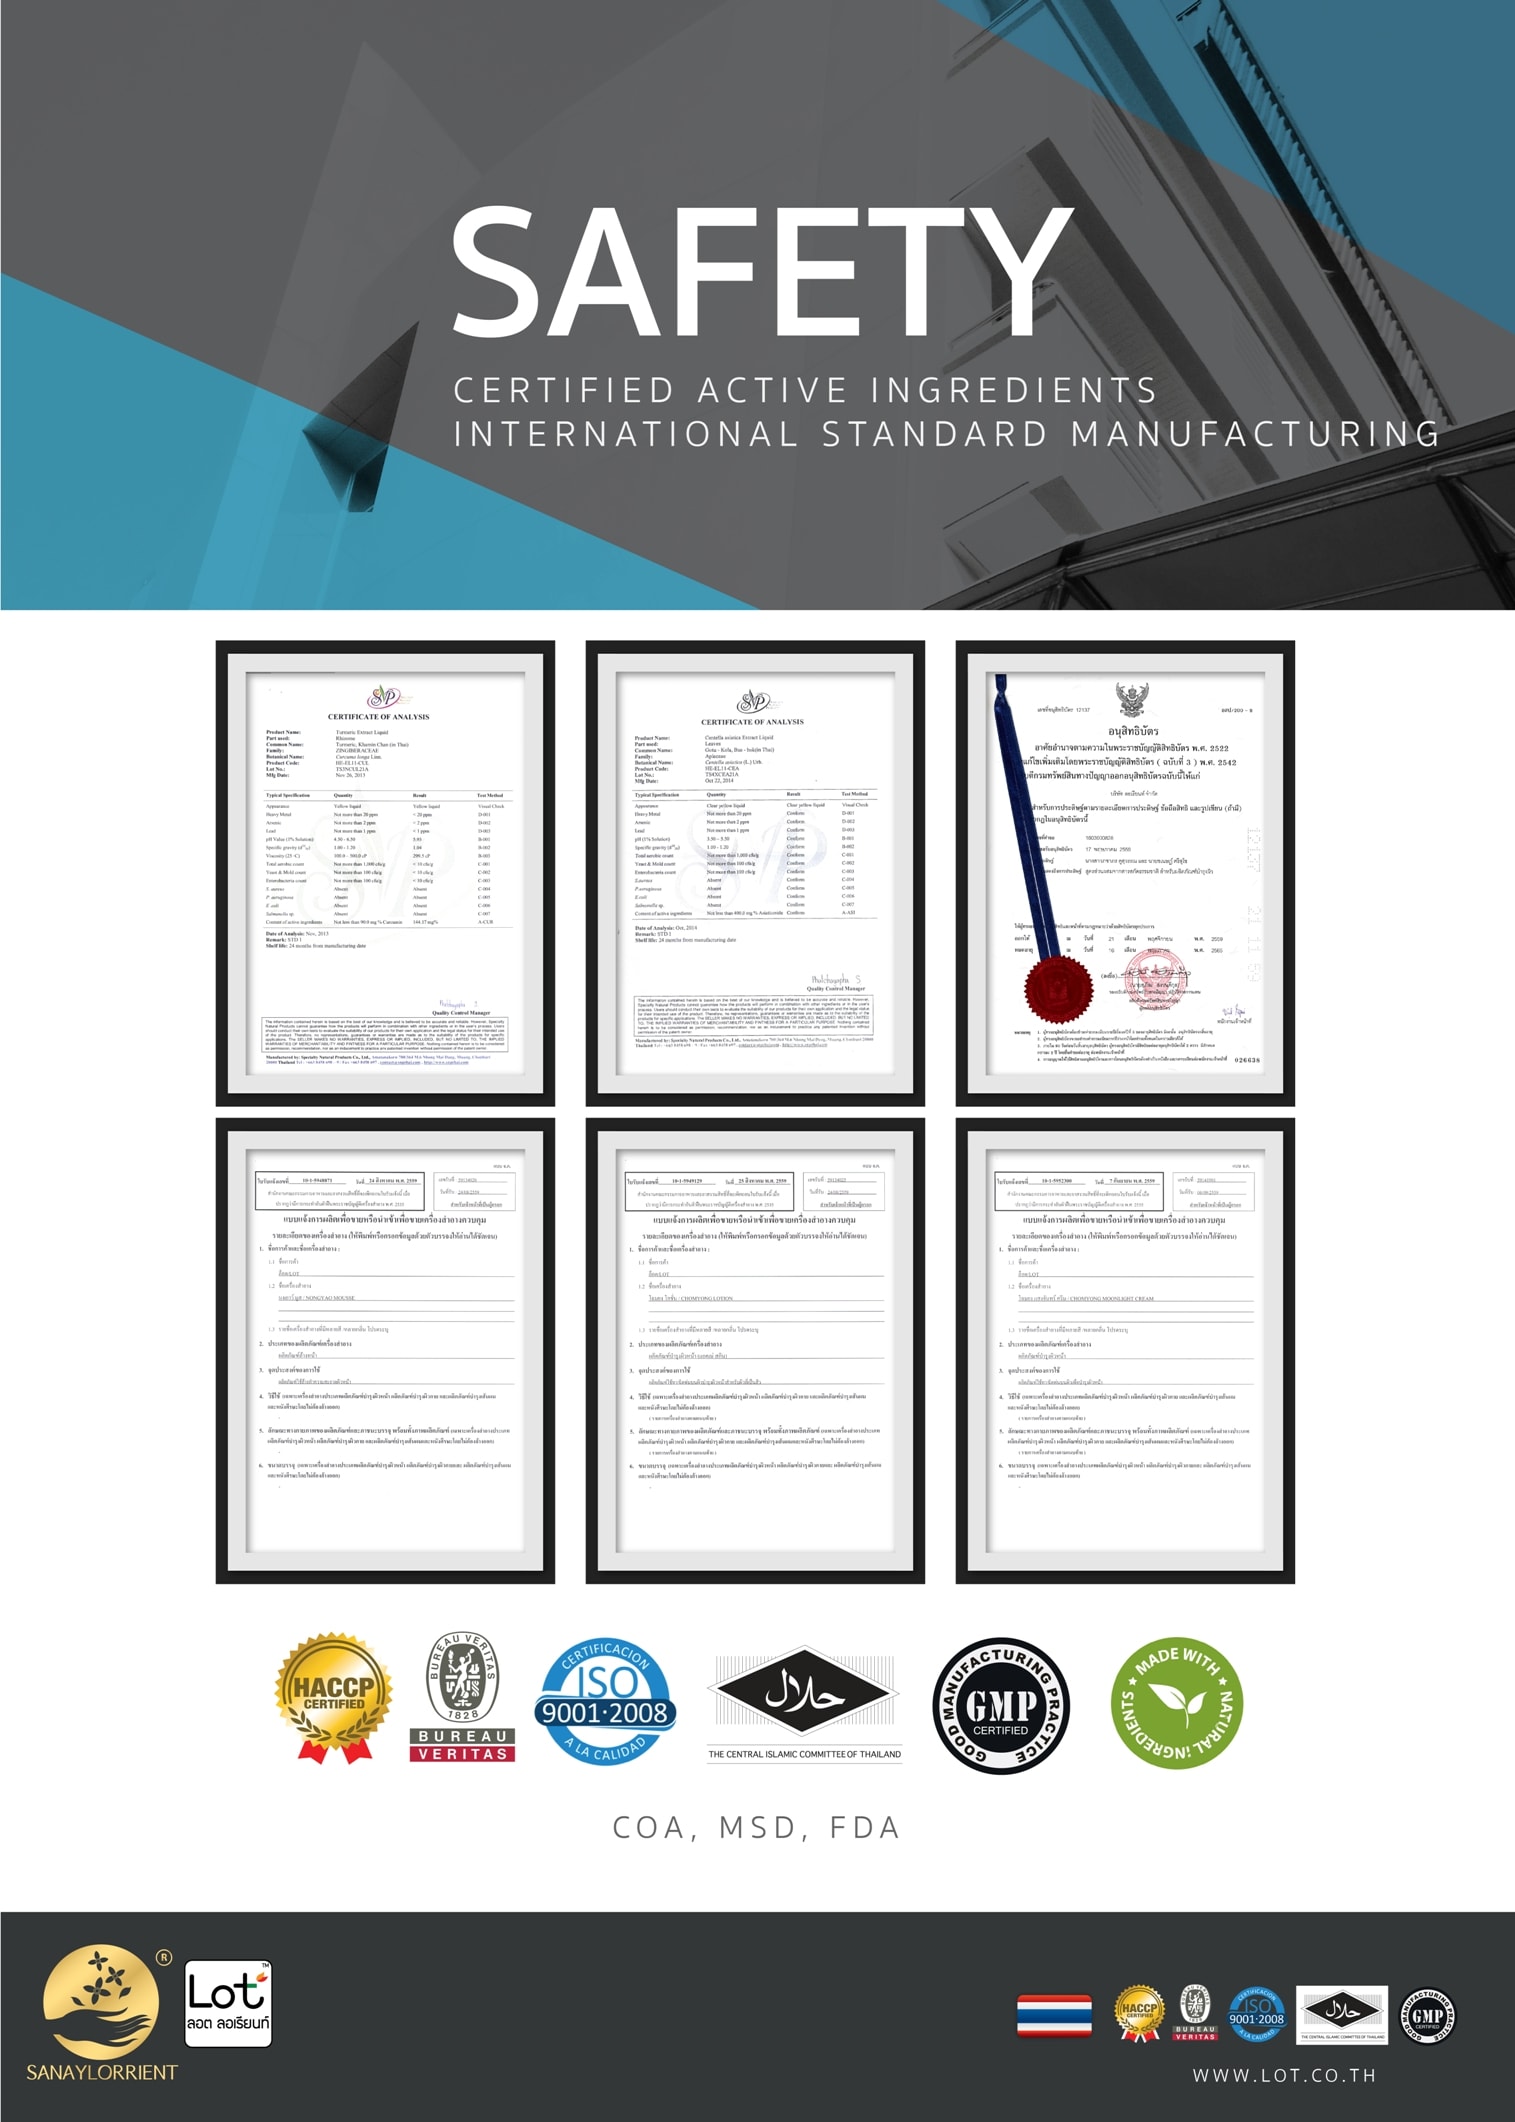 LOT SAFETY ความปลอดภัย ในการใช้ ผลิตภัณฑ์ ลอต ลอเรียนท์